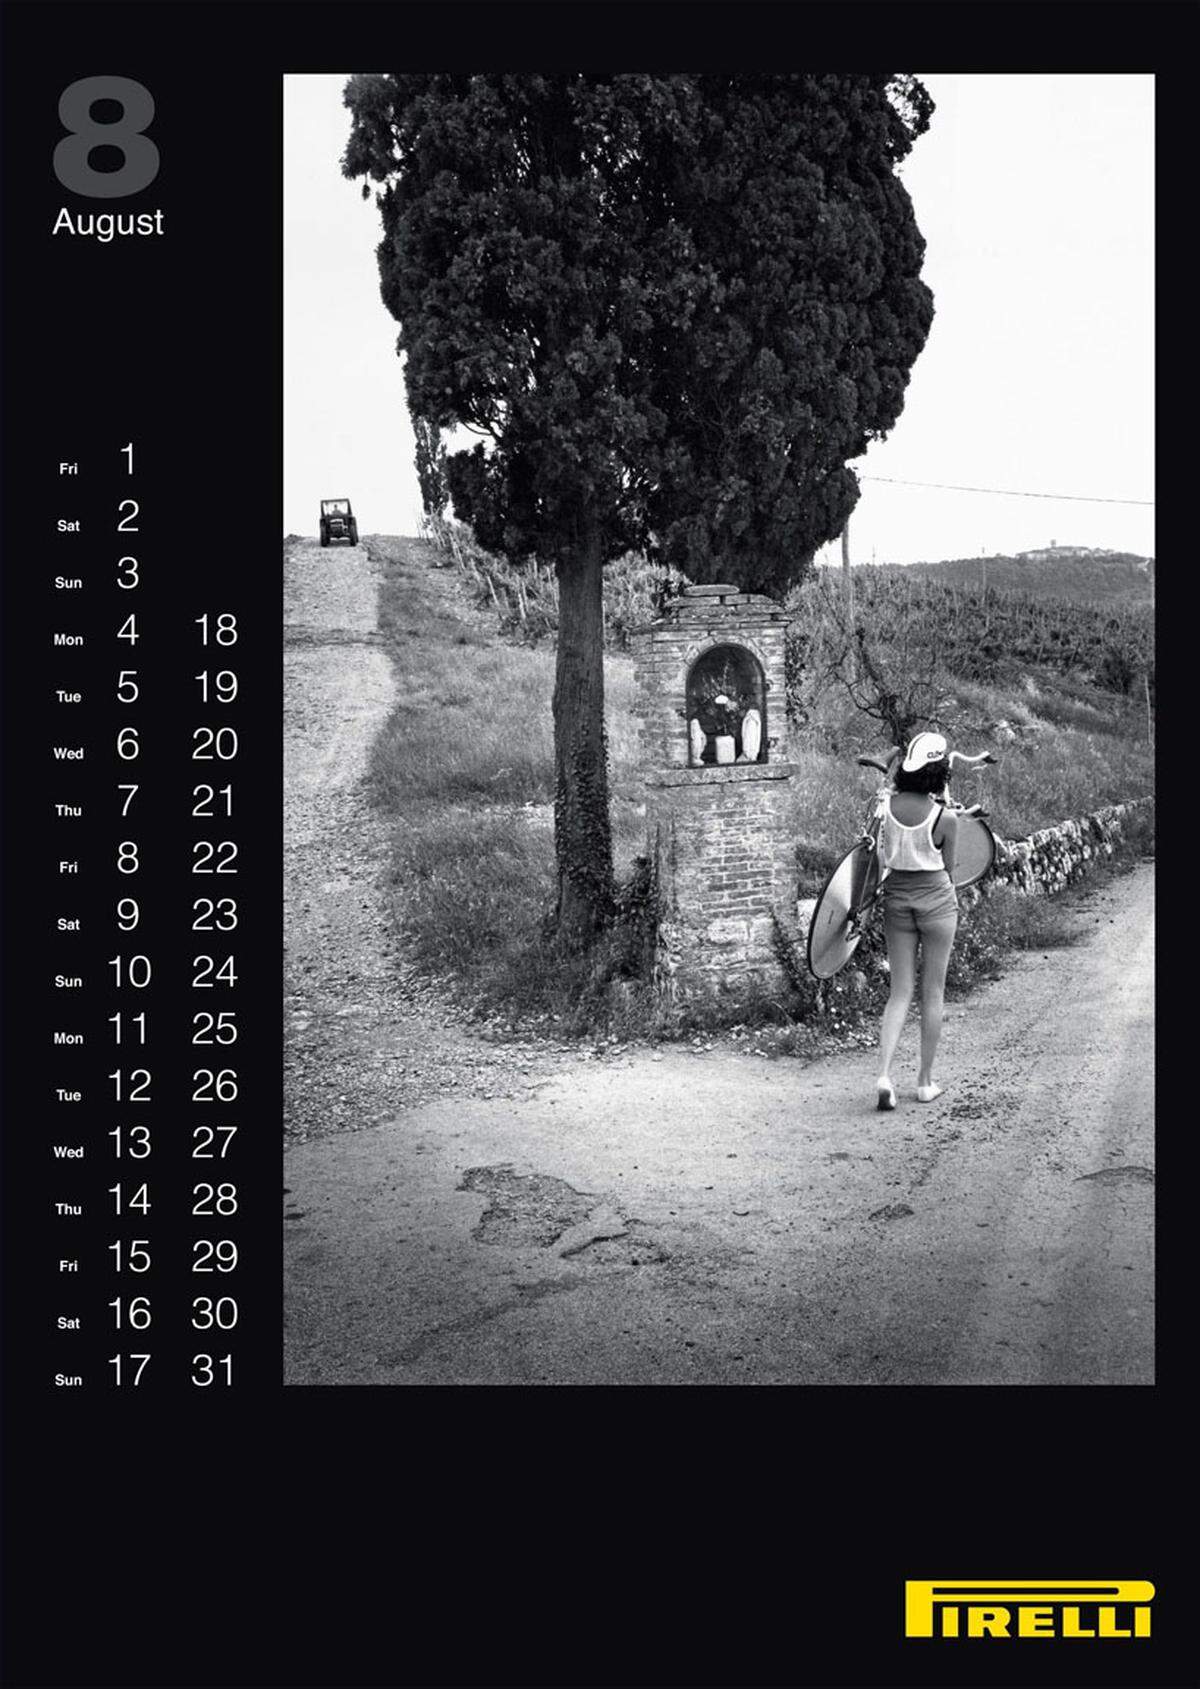 Nostalgisch muten die Bilder des Pirelli-Kalenders 2014 an, die jetzt in Italien veröffentlicht wurden. Kein Wunder, schließlich stammen sie von Kultfotograf Helmut Newton aus dem Jahr 1986.